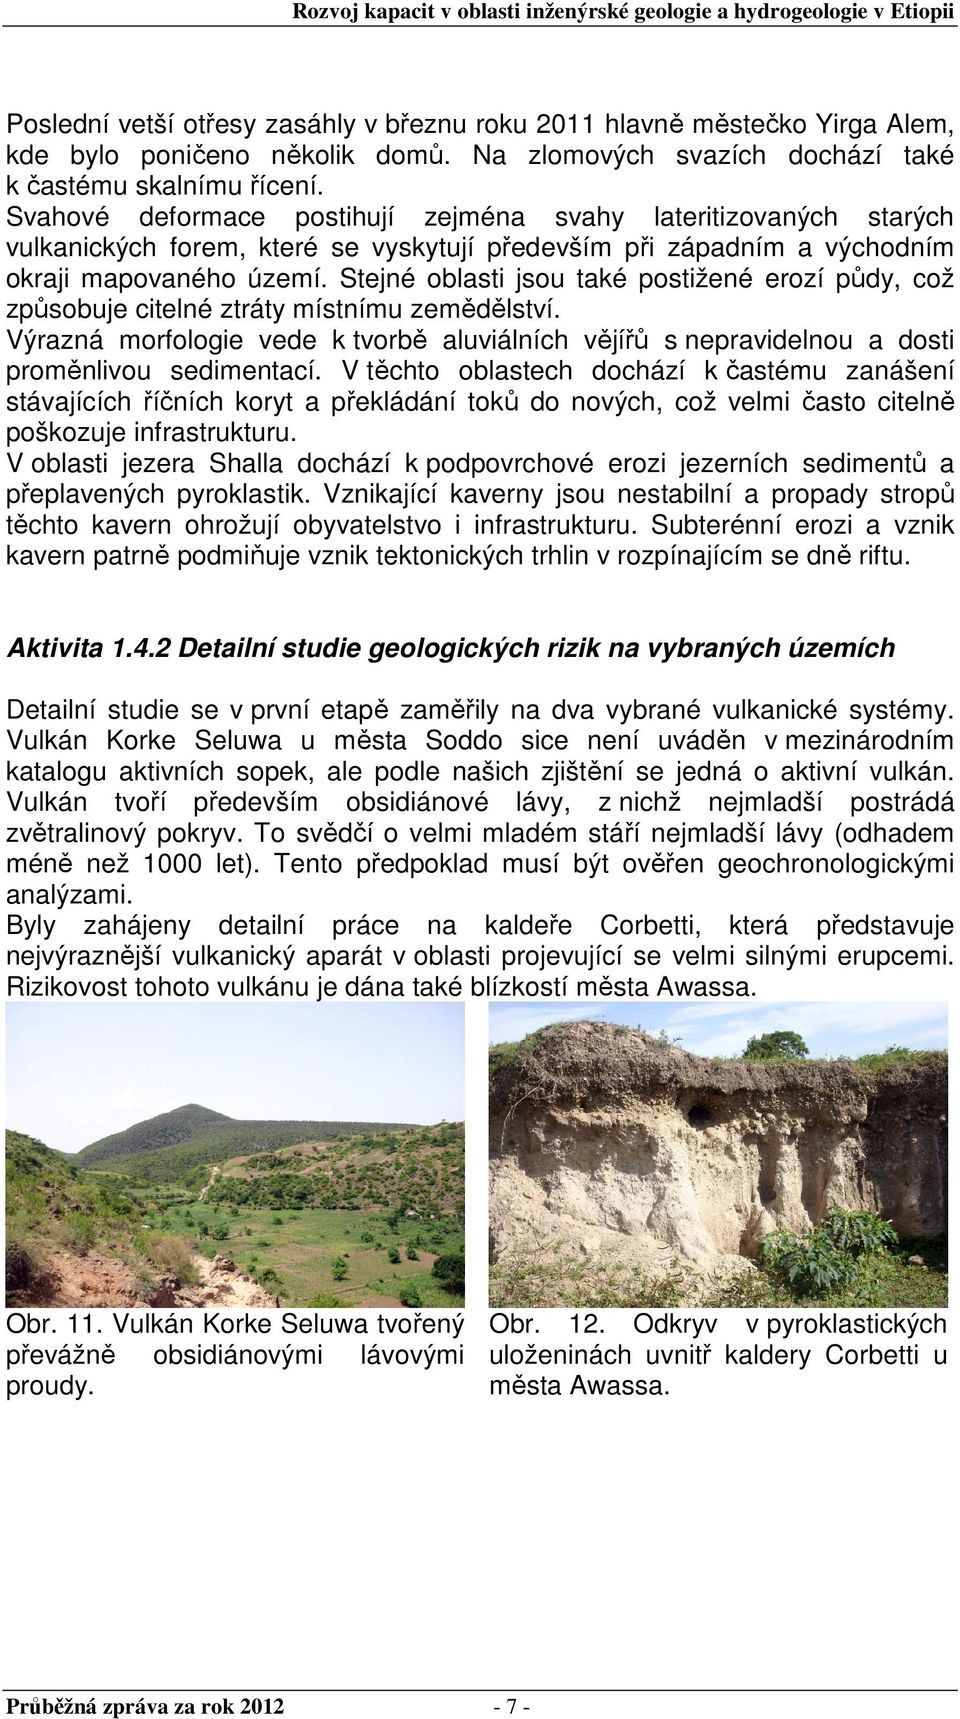 Stejné oblasti jsou také postižené erozí půdy, což způsobuje citelné ztráty místnímu zemědělství. Výrazná morfologie vede k tvorbě aluviálních vějířů s nepravidelnou a dosti proměnlivou sedimentací.